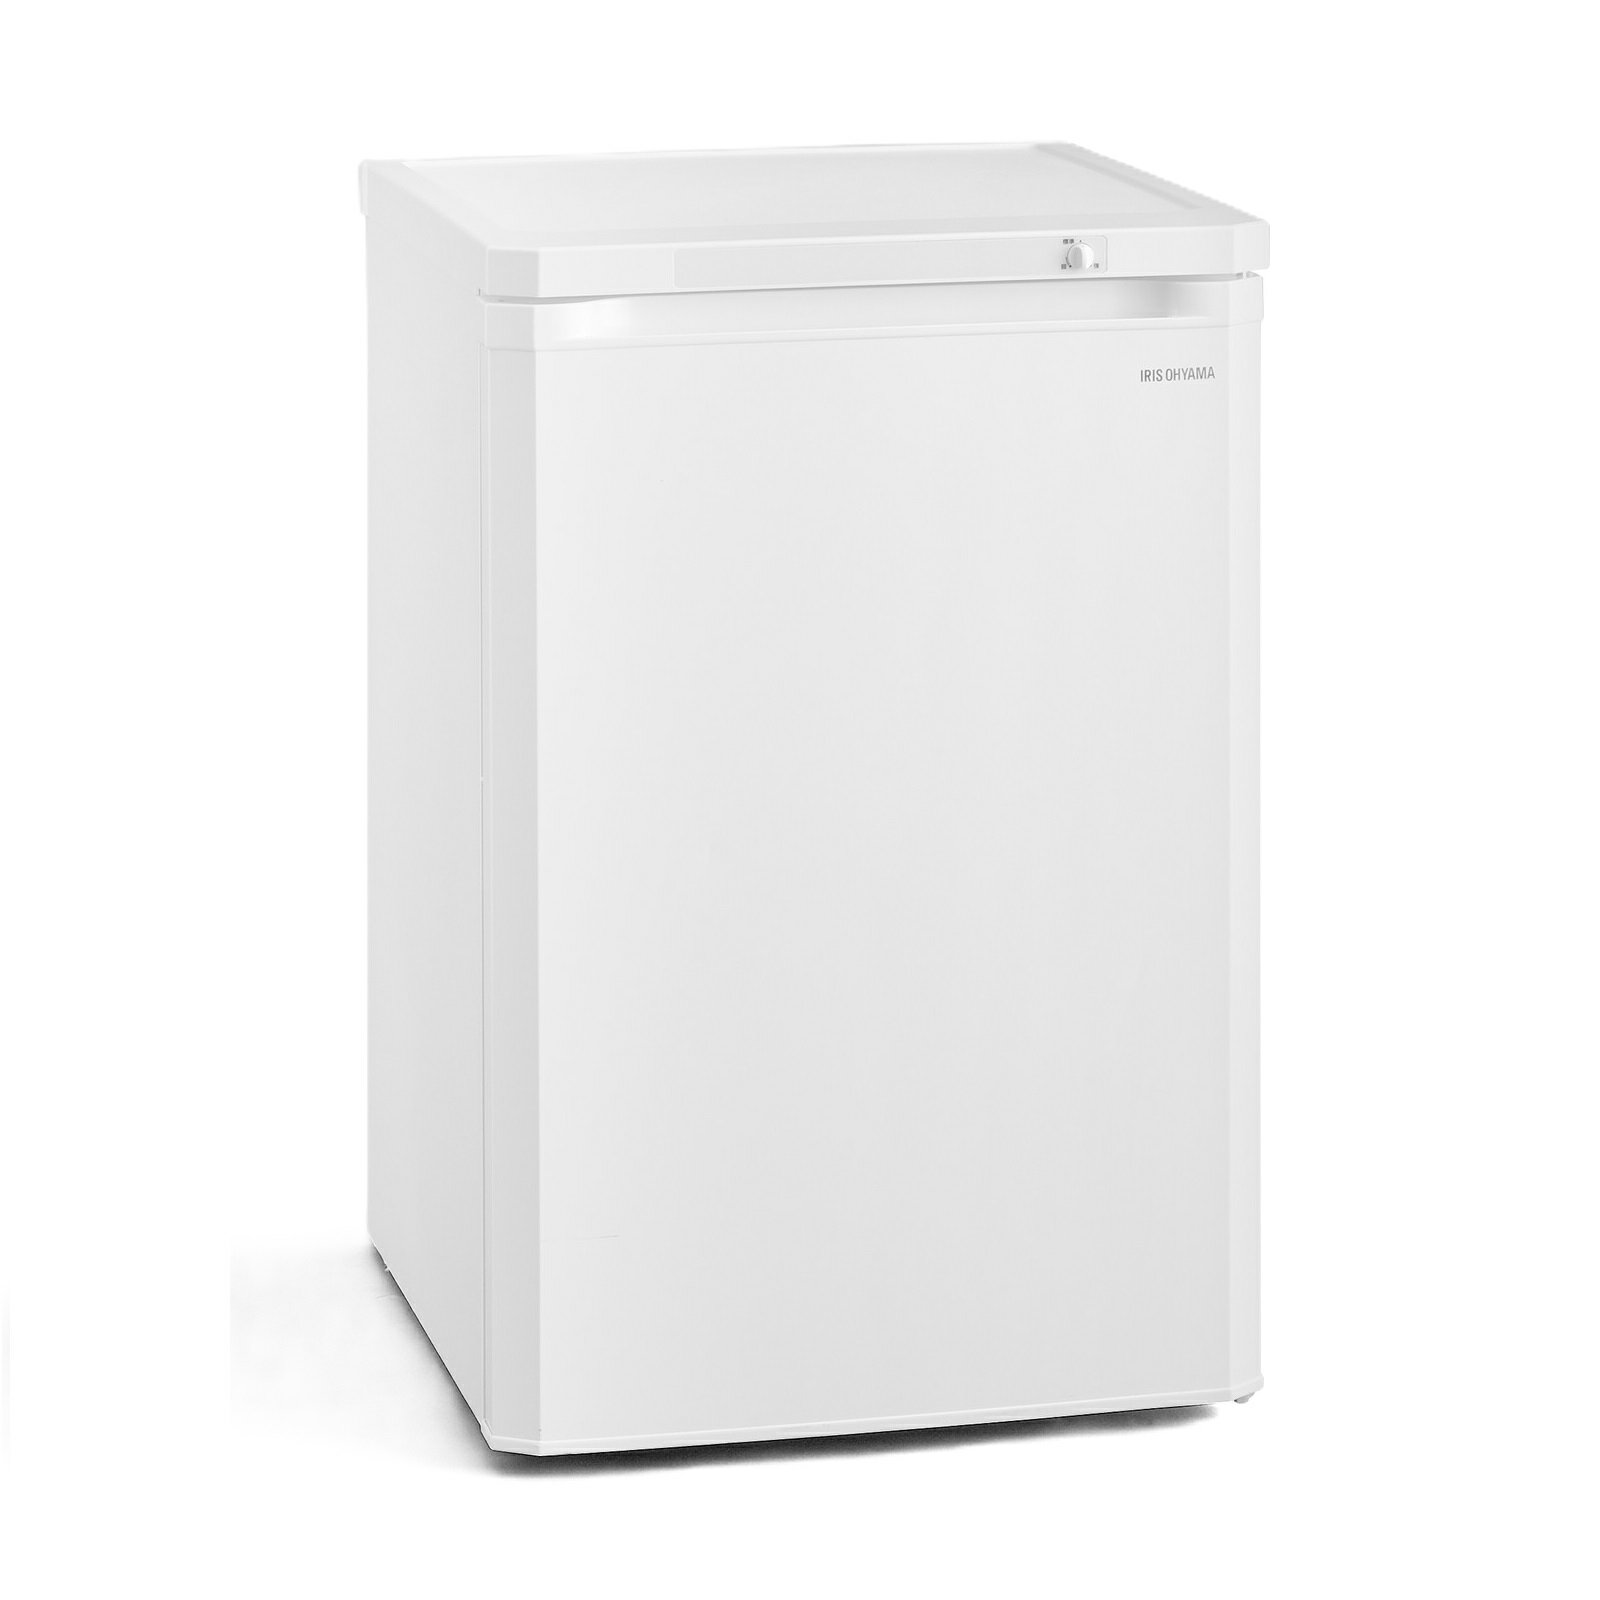 冷凍庫 前開き冷凍庫 85L ホワイト W550×D582×H845 冷凍 家電 冷蔵庫 冷凍食品 食材 右開き 家電